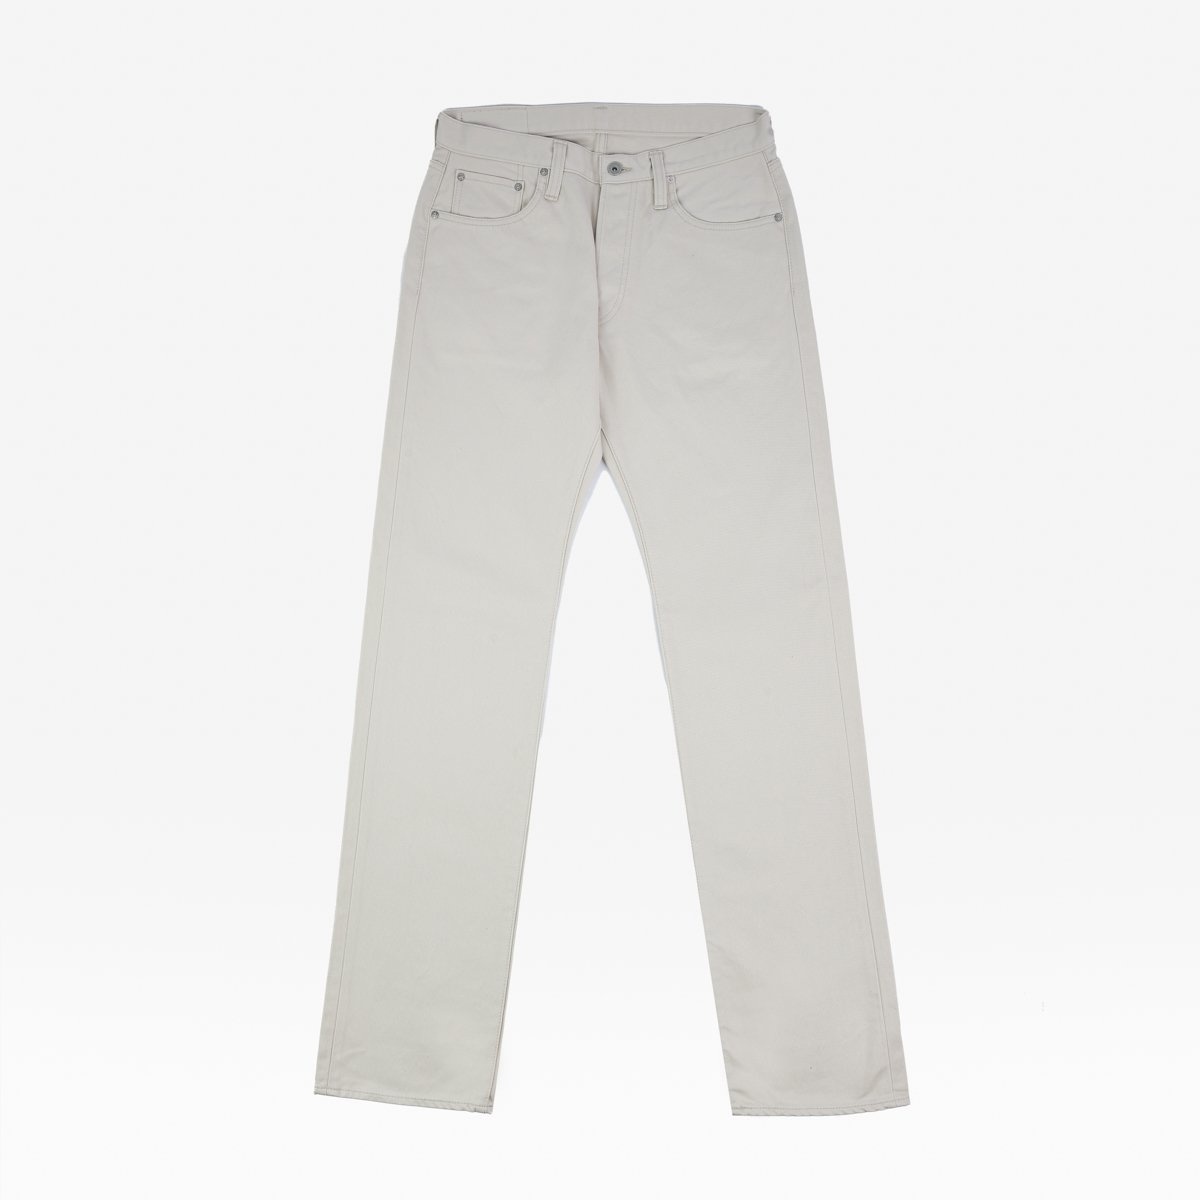 IH-634-PIQ 14oz Cotton Piqué Straight Cut Jeans - Ecru - 1